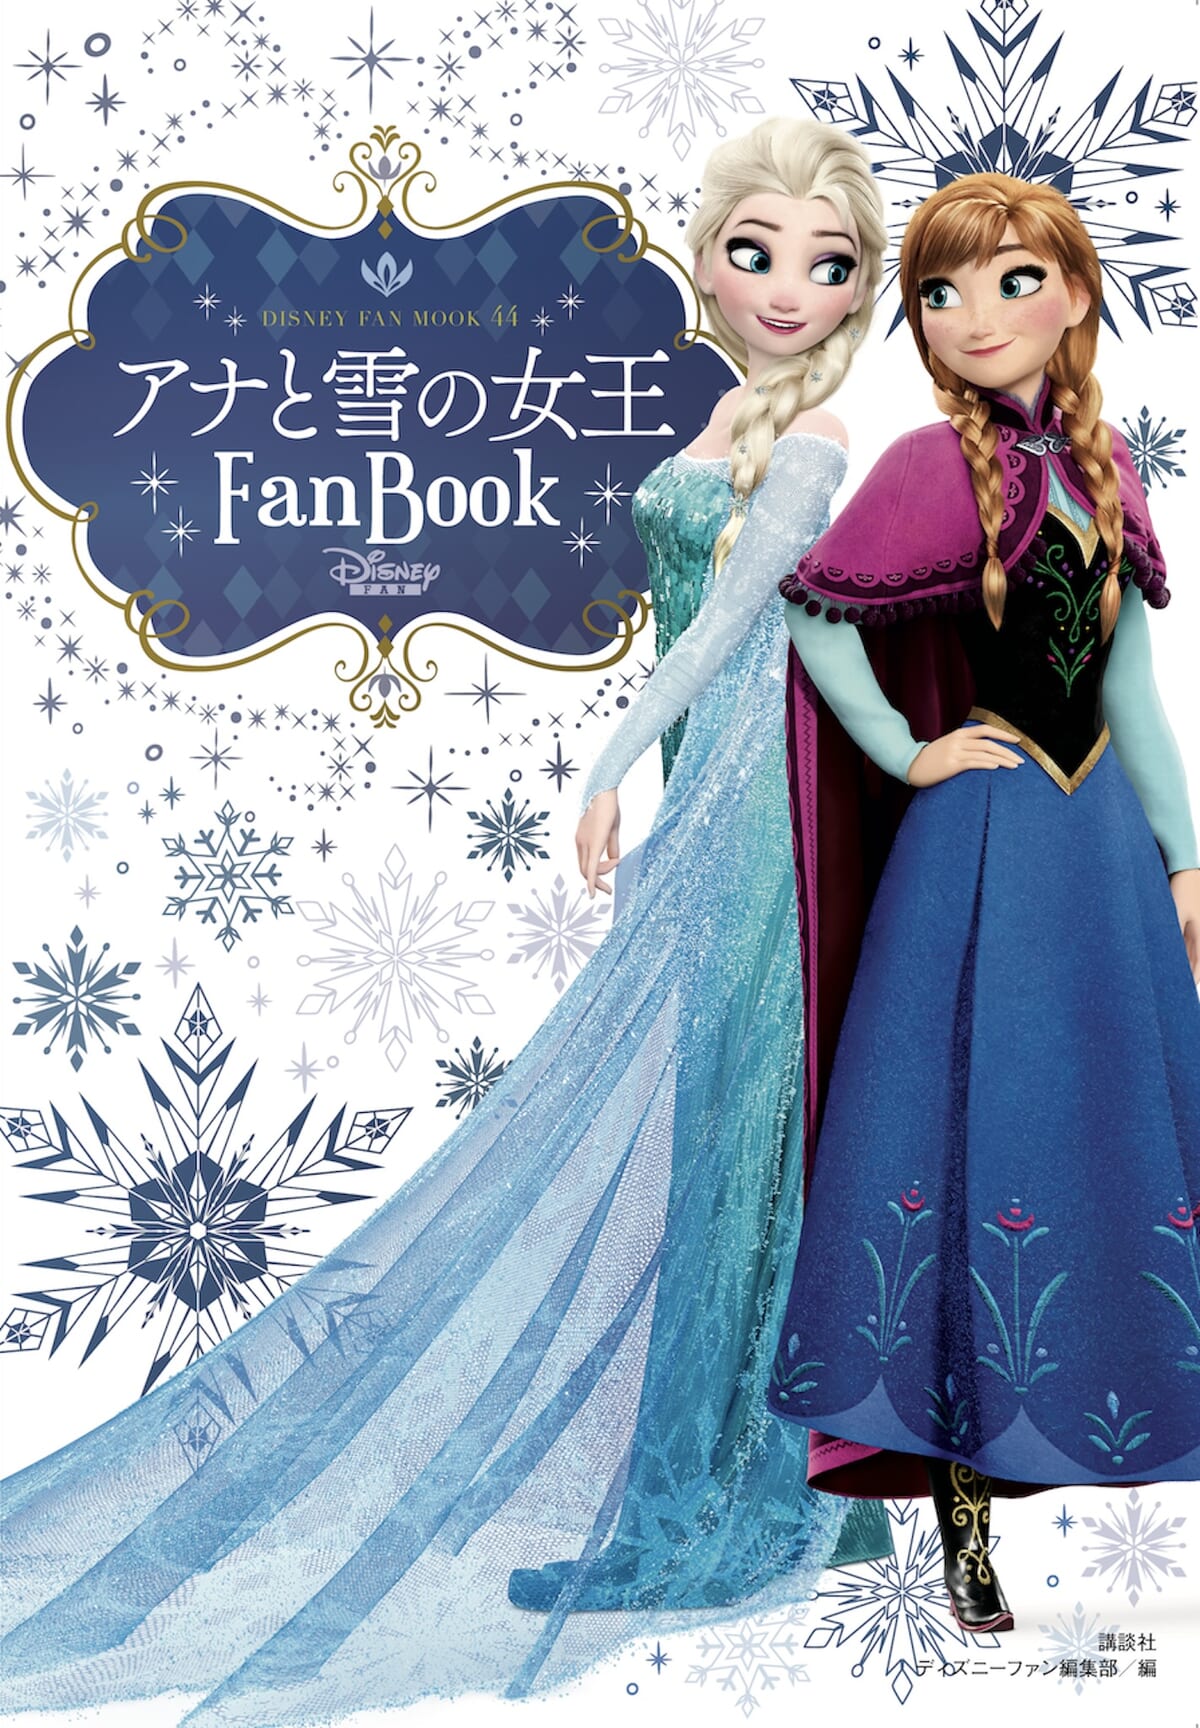 講談社 ディズニー「アナと雪の女王Fan Book」